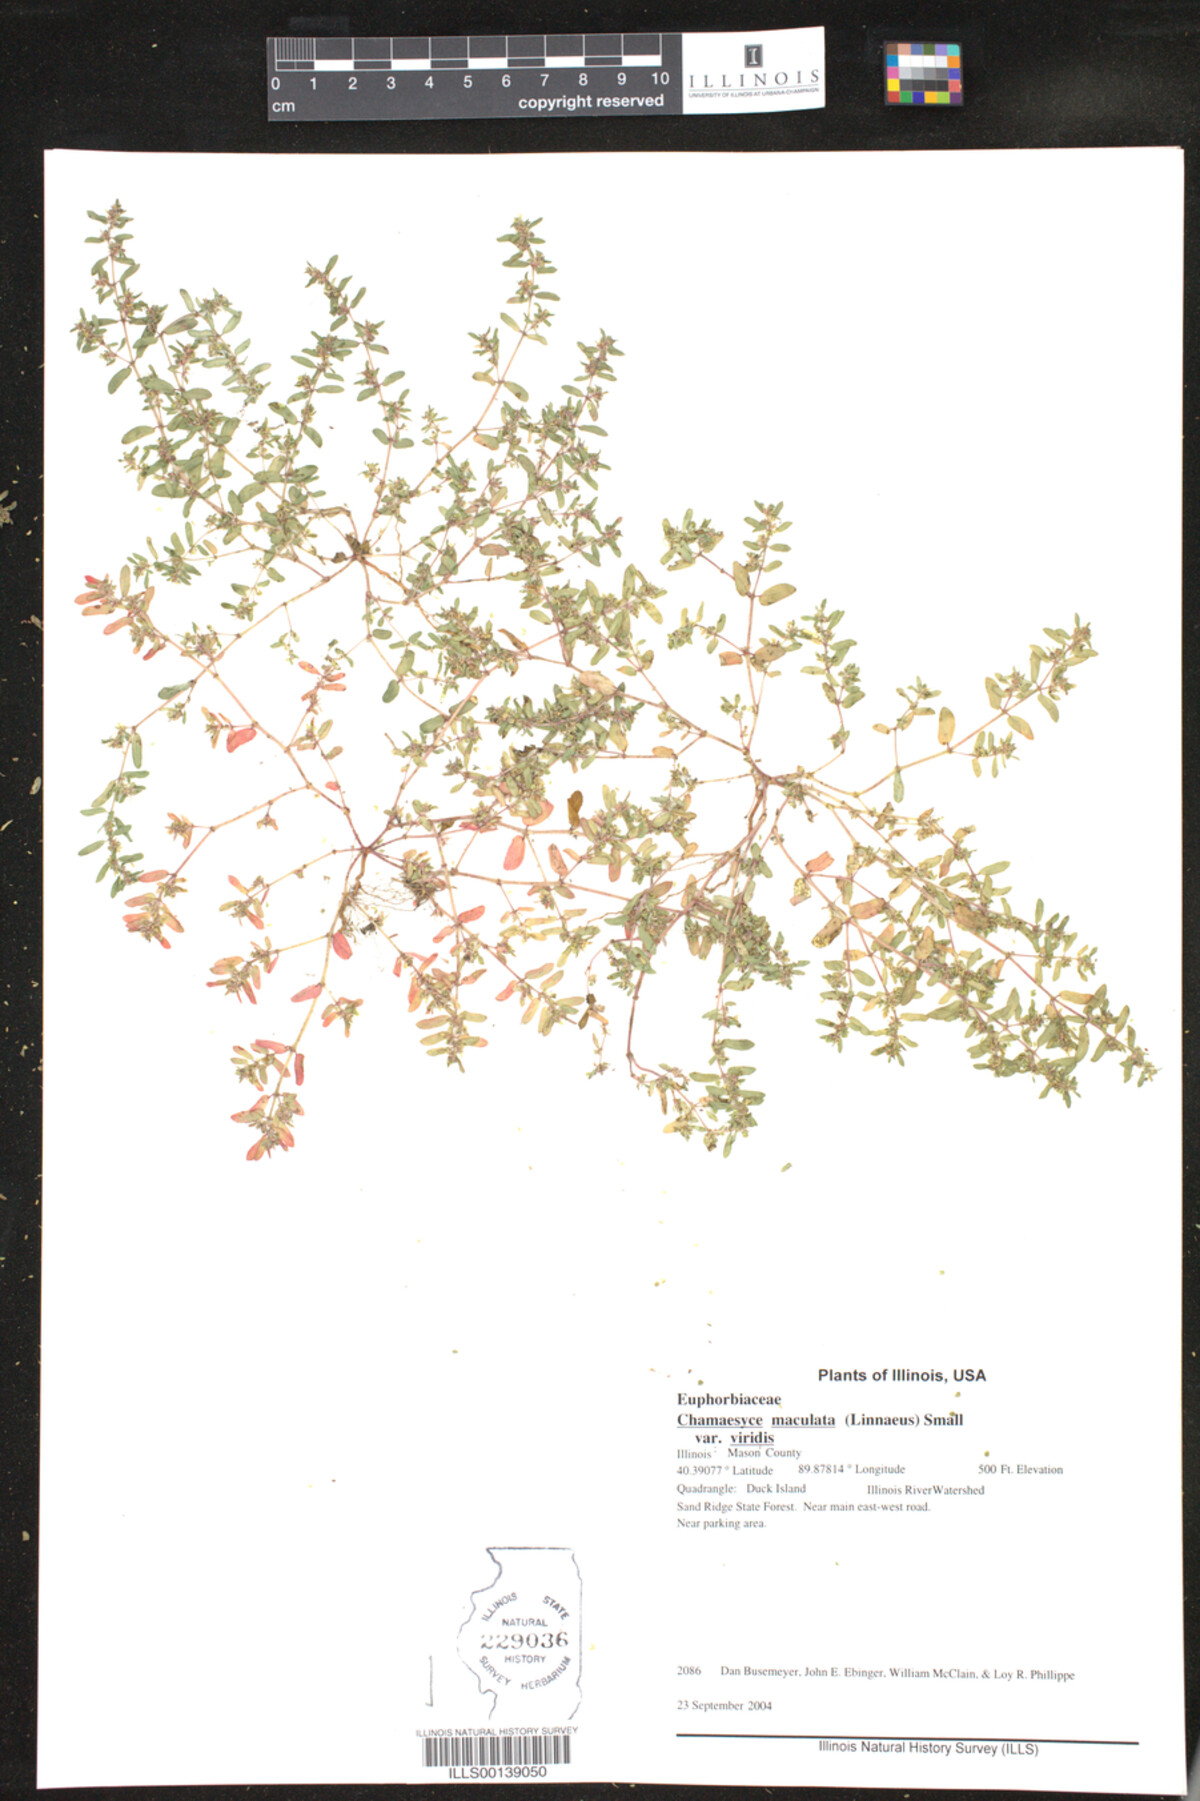 Chamaesyce maculata var. viridis image